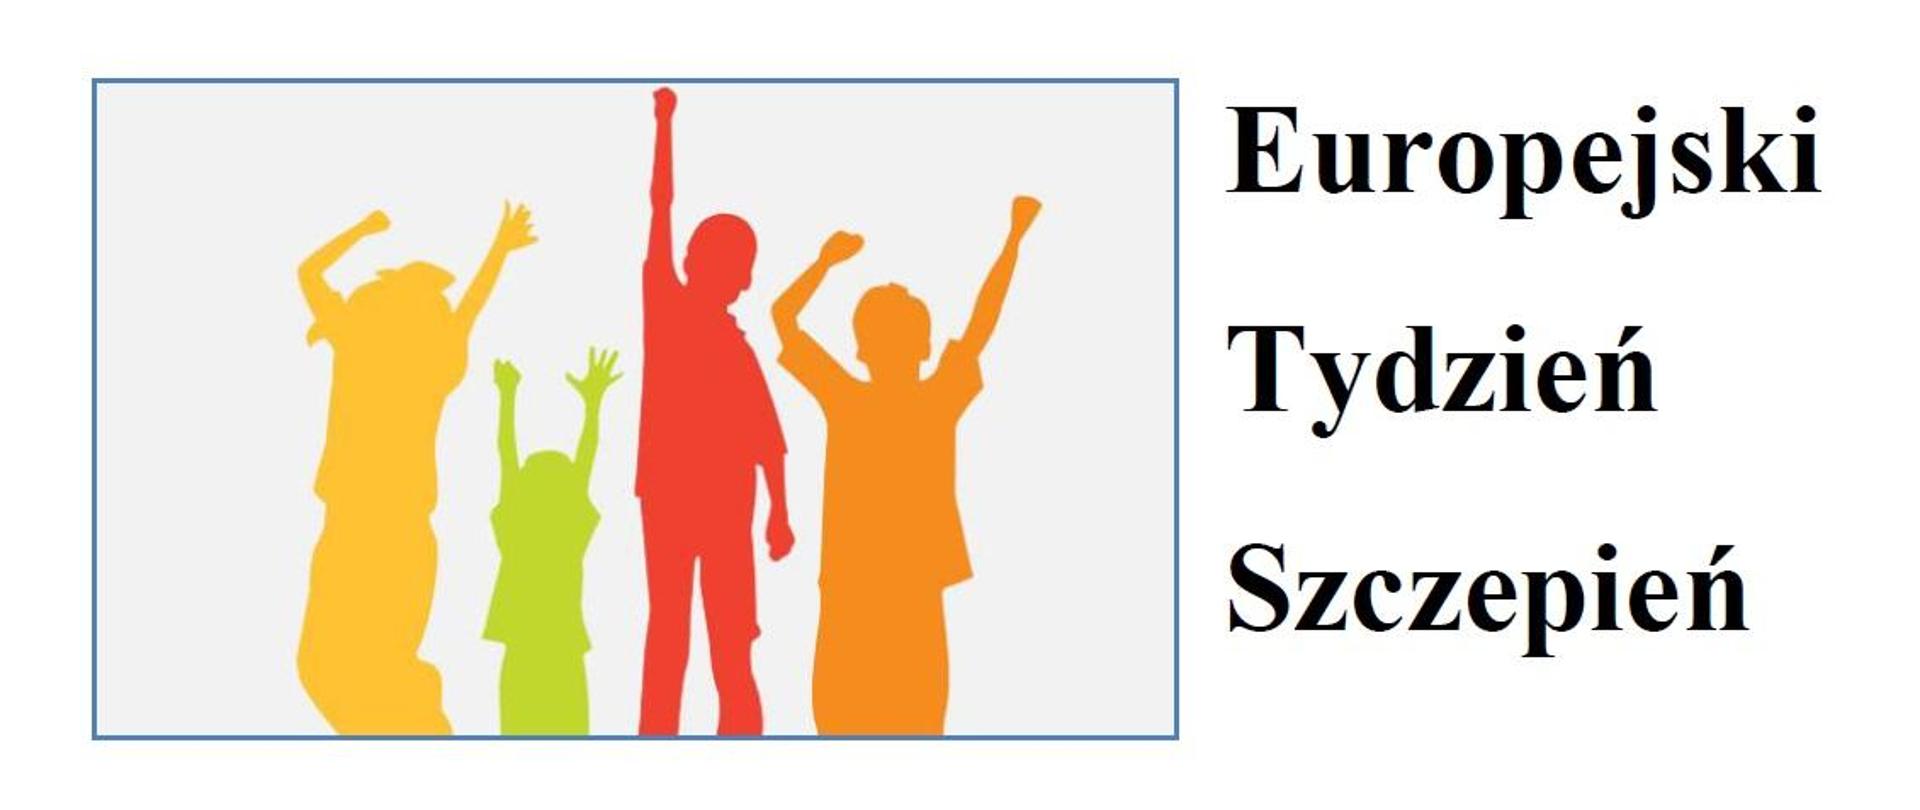 Z lewej strony kolorowe skaczące dzieci, z prawej napis "EUROPEJSKI TYDZIEŃ SZCZEPIEŃ"